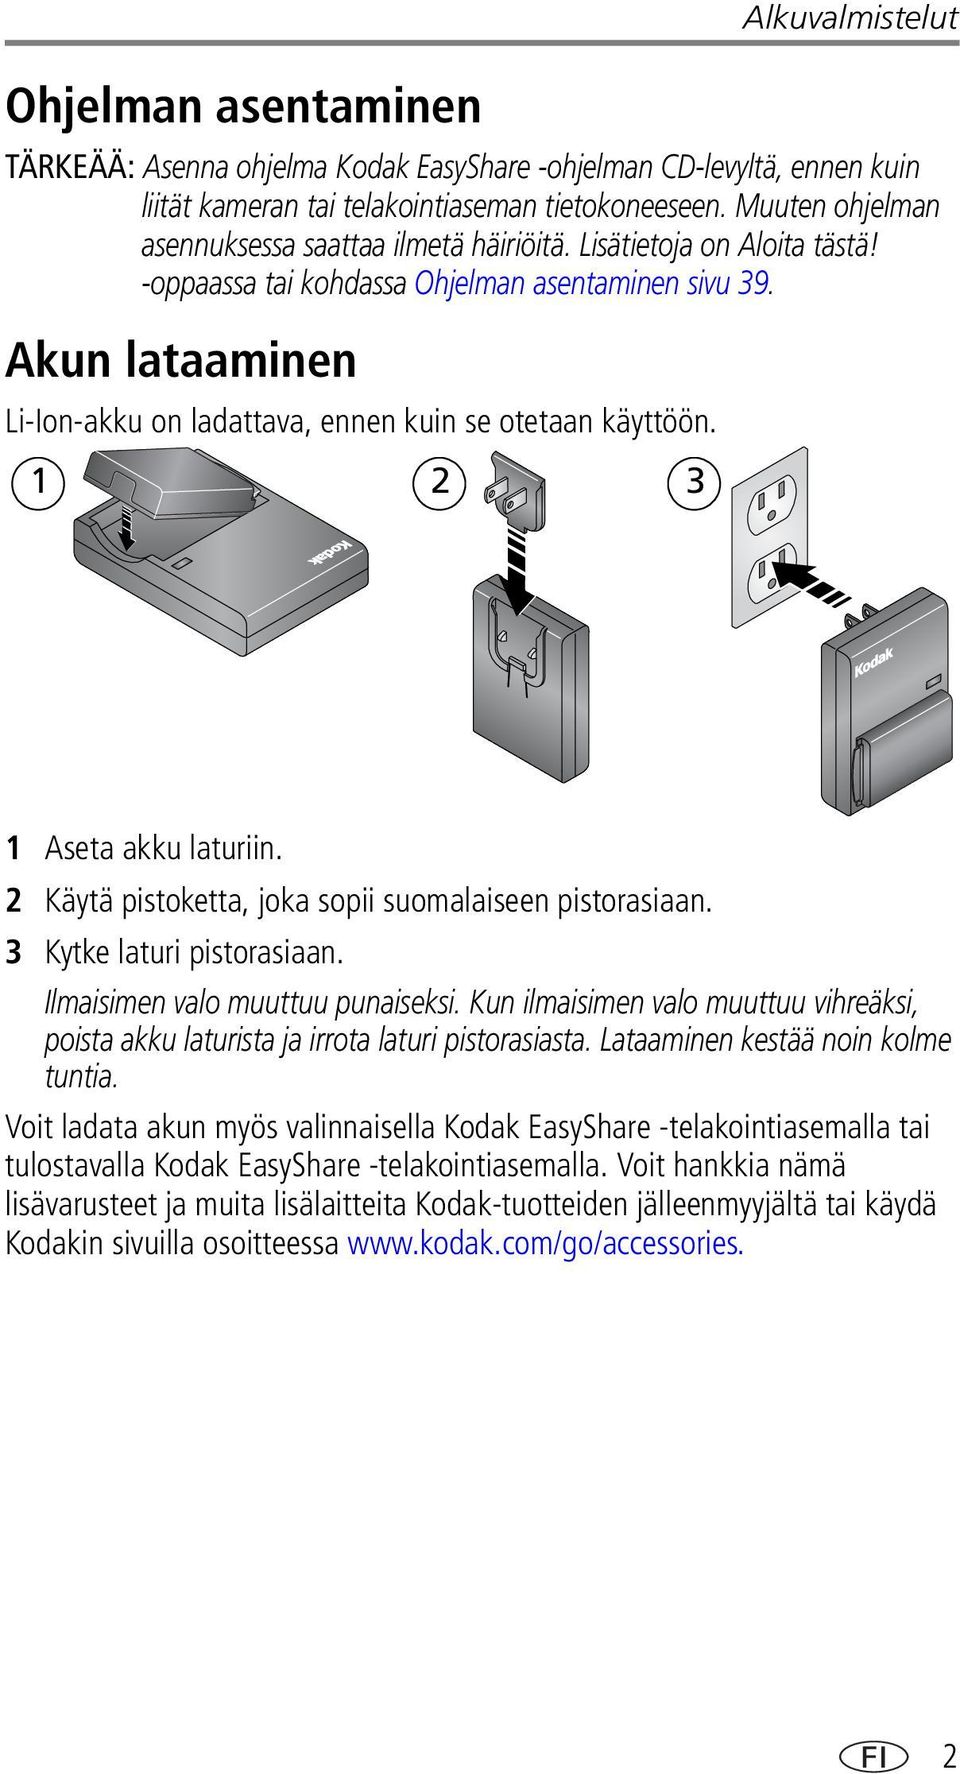 Akun lataaminen Li-Ion-akku on ladattava, ennen kuin se otetaan käyttöön. 1 2 3 1 Aseta akku laturiin. 2 Käytä pistoketta, joka sopii suomalaiseen pistorasiaan. 3 Kytke laturi pistorasiaan.